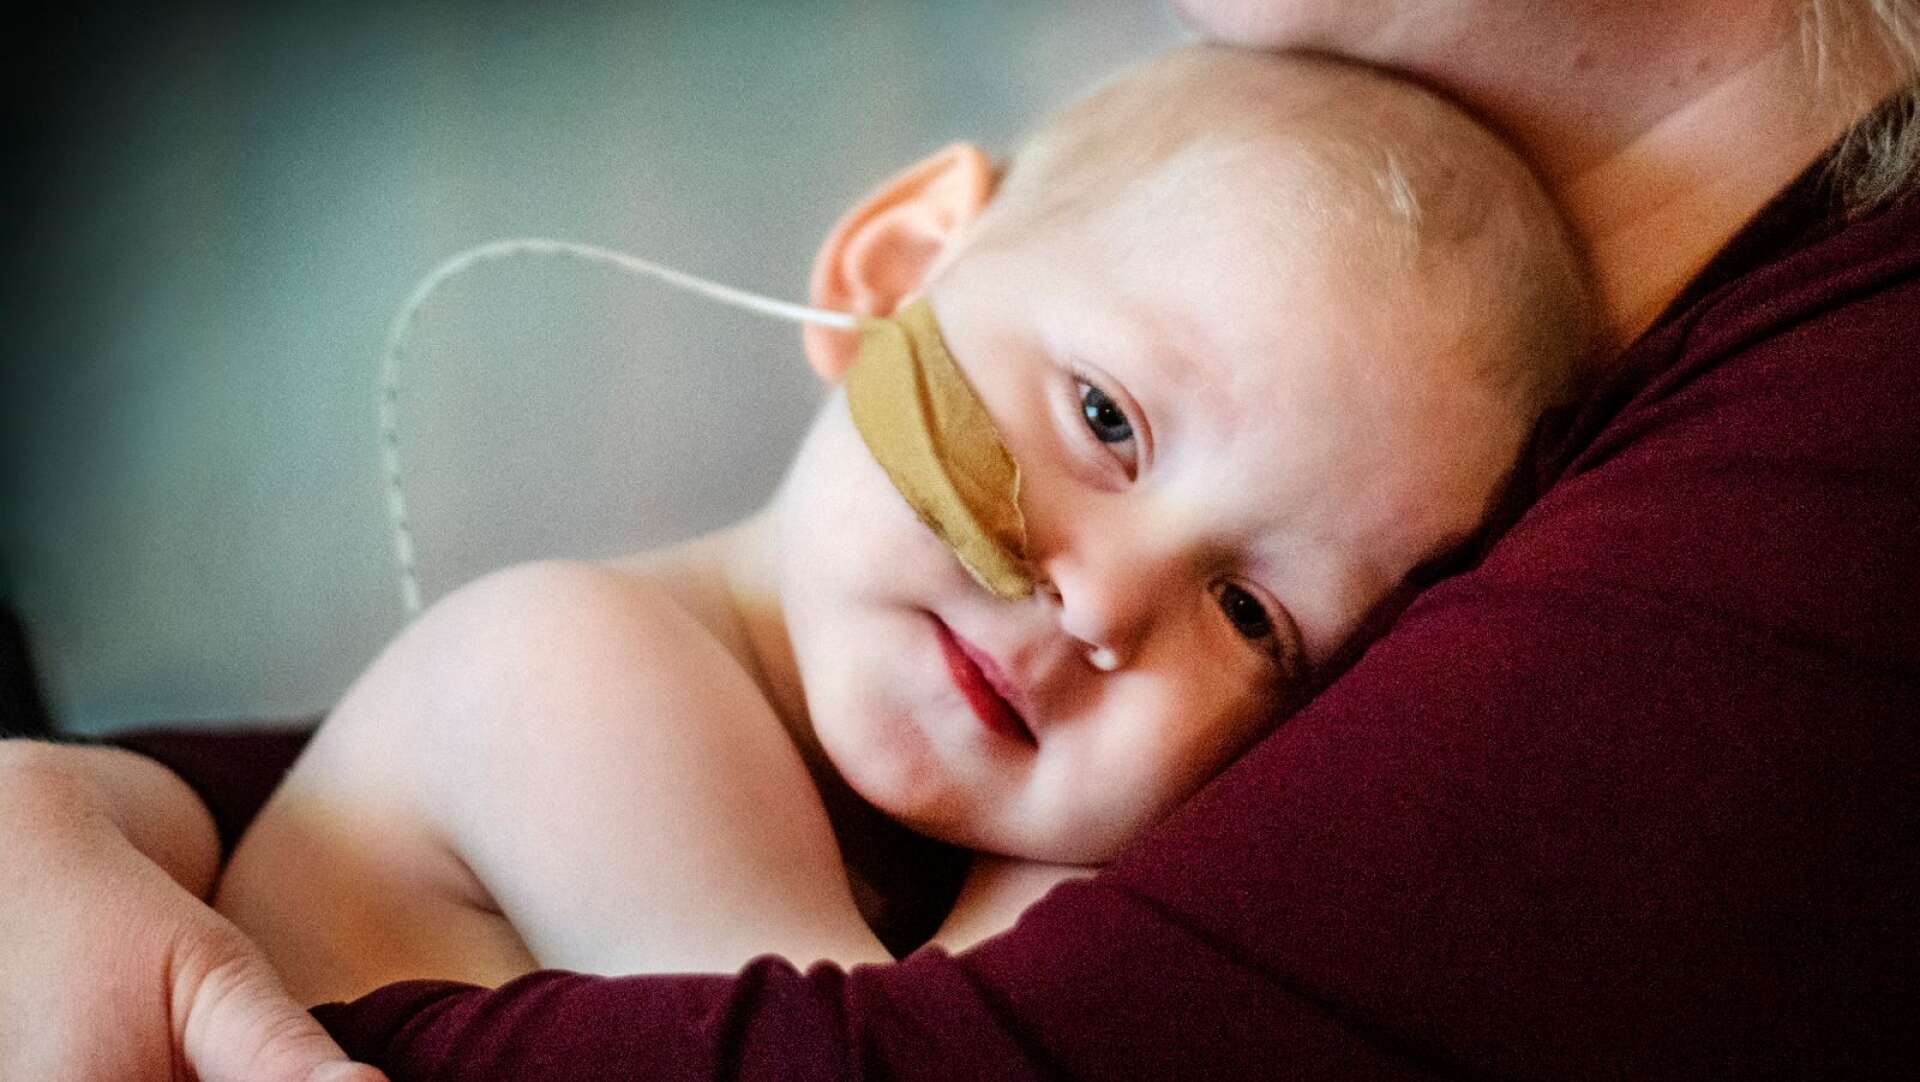 Colin från Karlstad diagnostiserades med leukemi närhan endast var 2 år gammal. Jag och reporter Ida Myrin kom att följa Colin och hans familj med återkommande reportage om deras vardag och kamp mot sjukdomen under 2022. Den här bilden är från vårt första möte i februari.